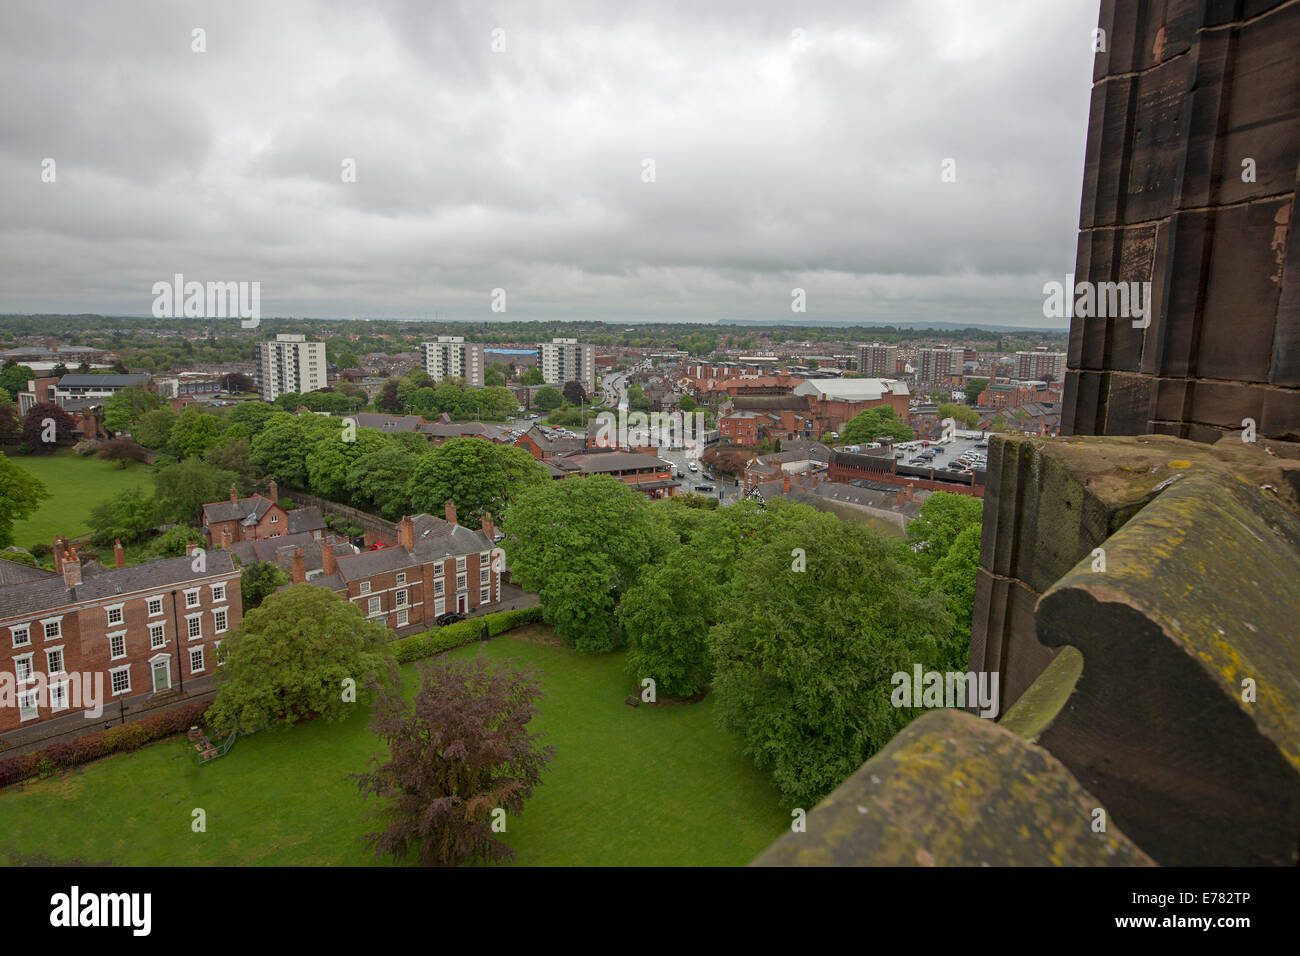 Vista su un vasto paesaggio urbano dominato da alti edifici dal tetto della cattedrale storica nella città inglese di Chester Foto Stock